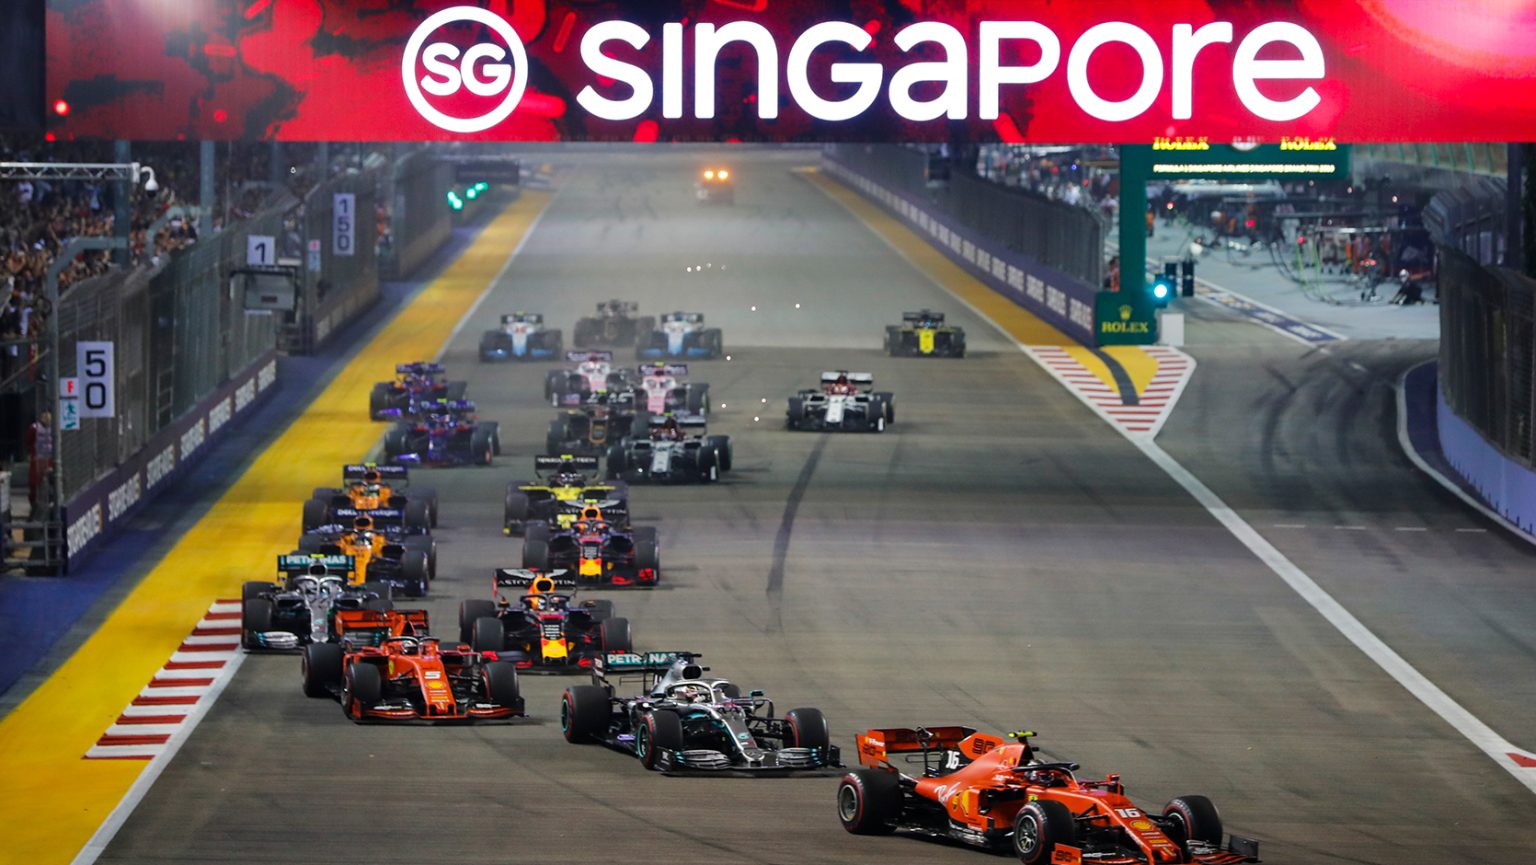 Singapore Grand Prix Predictions